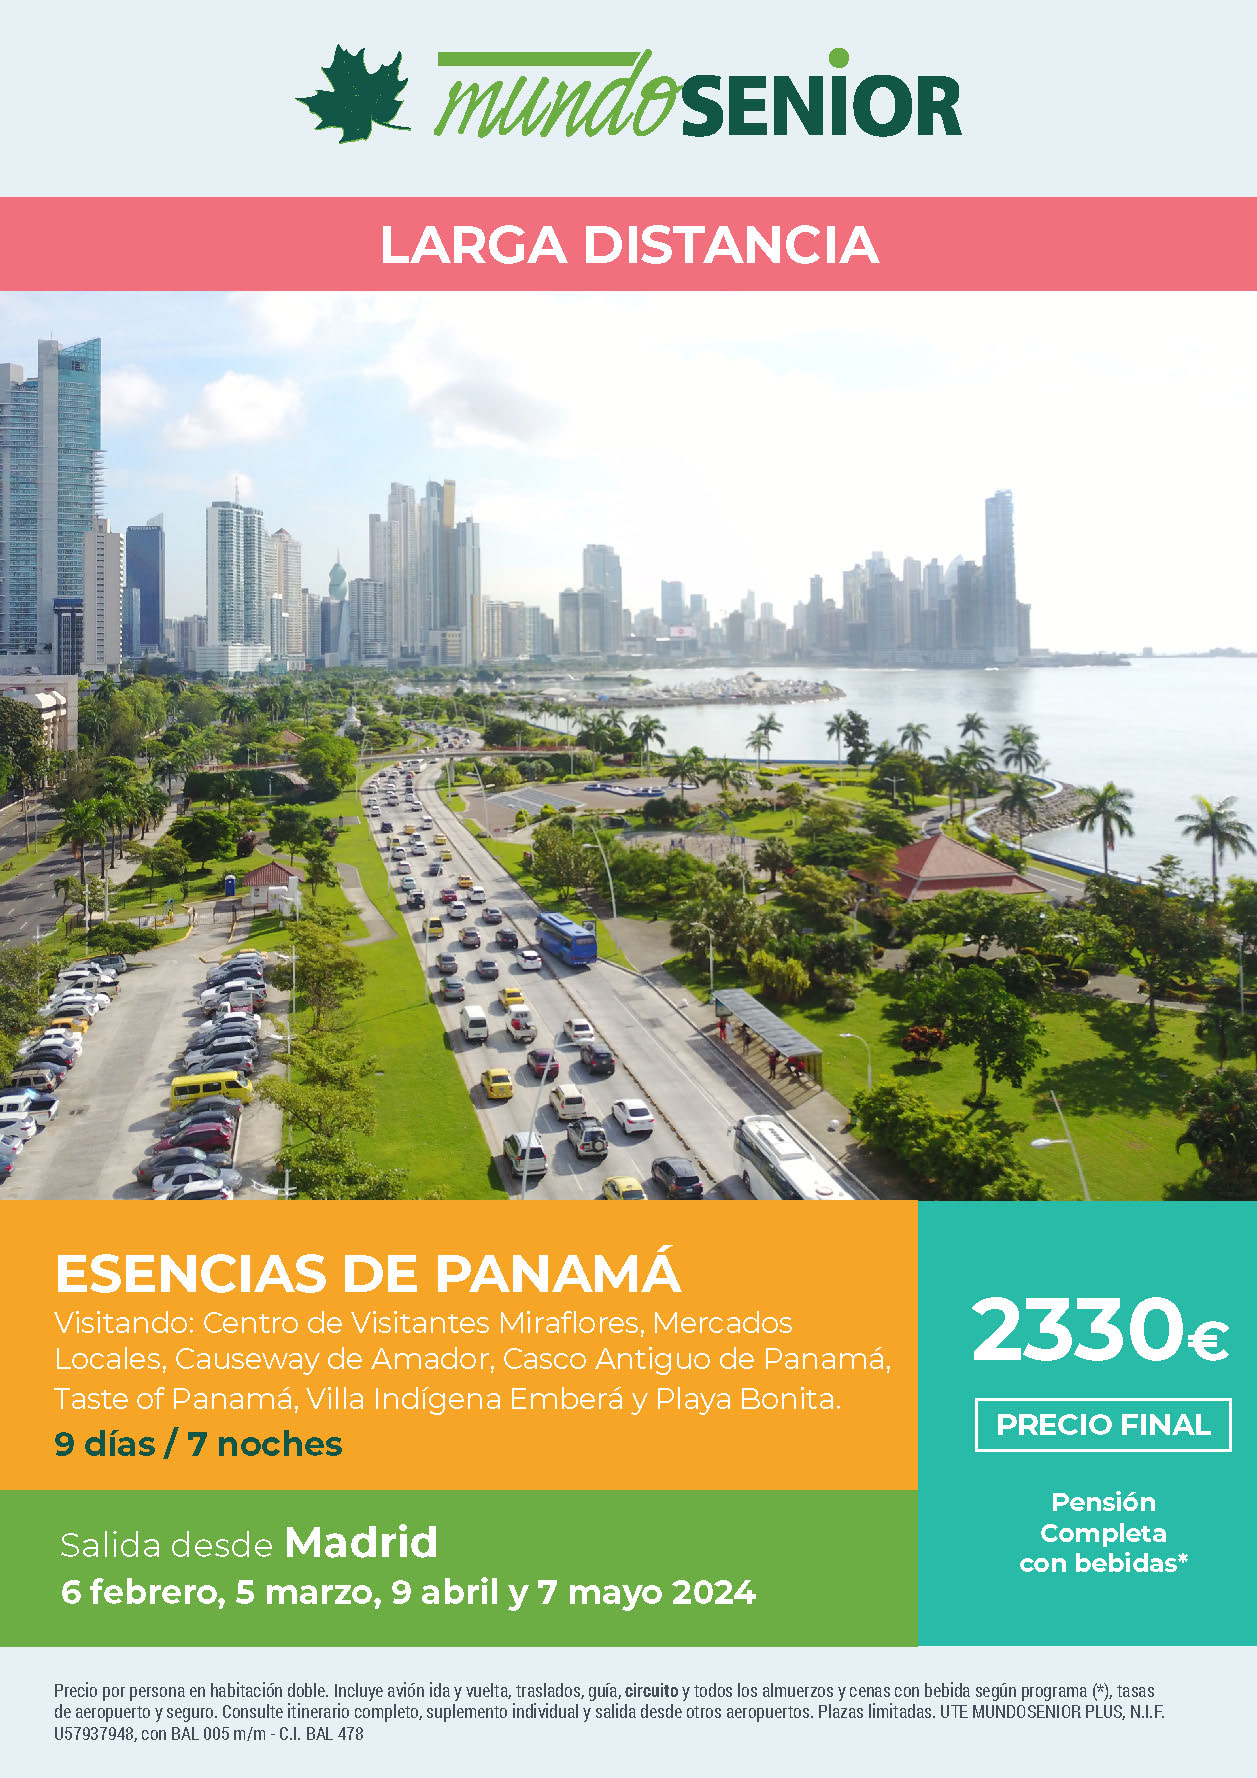 Oferta Mundo Senior circuito Esencias de Panama 9 dias pension completa salidas febrero marzo abril mayo 2024 en vuelo directo desde Madrid